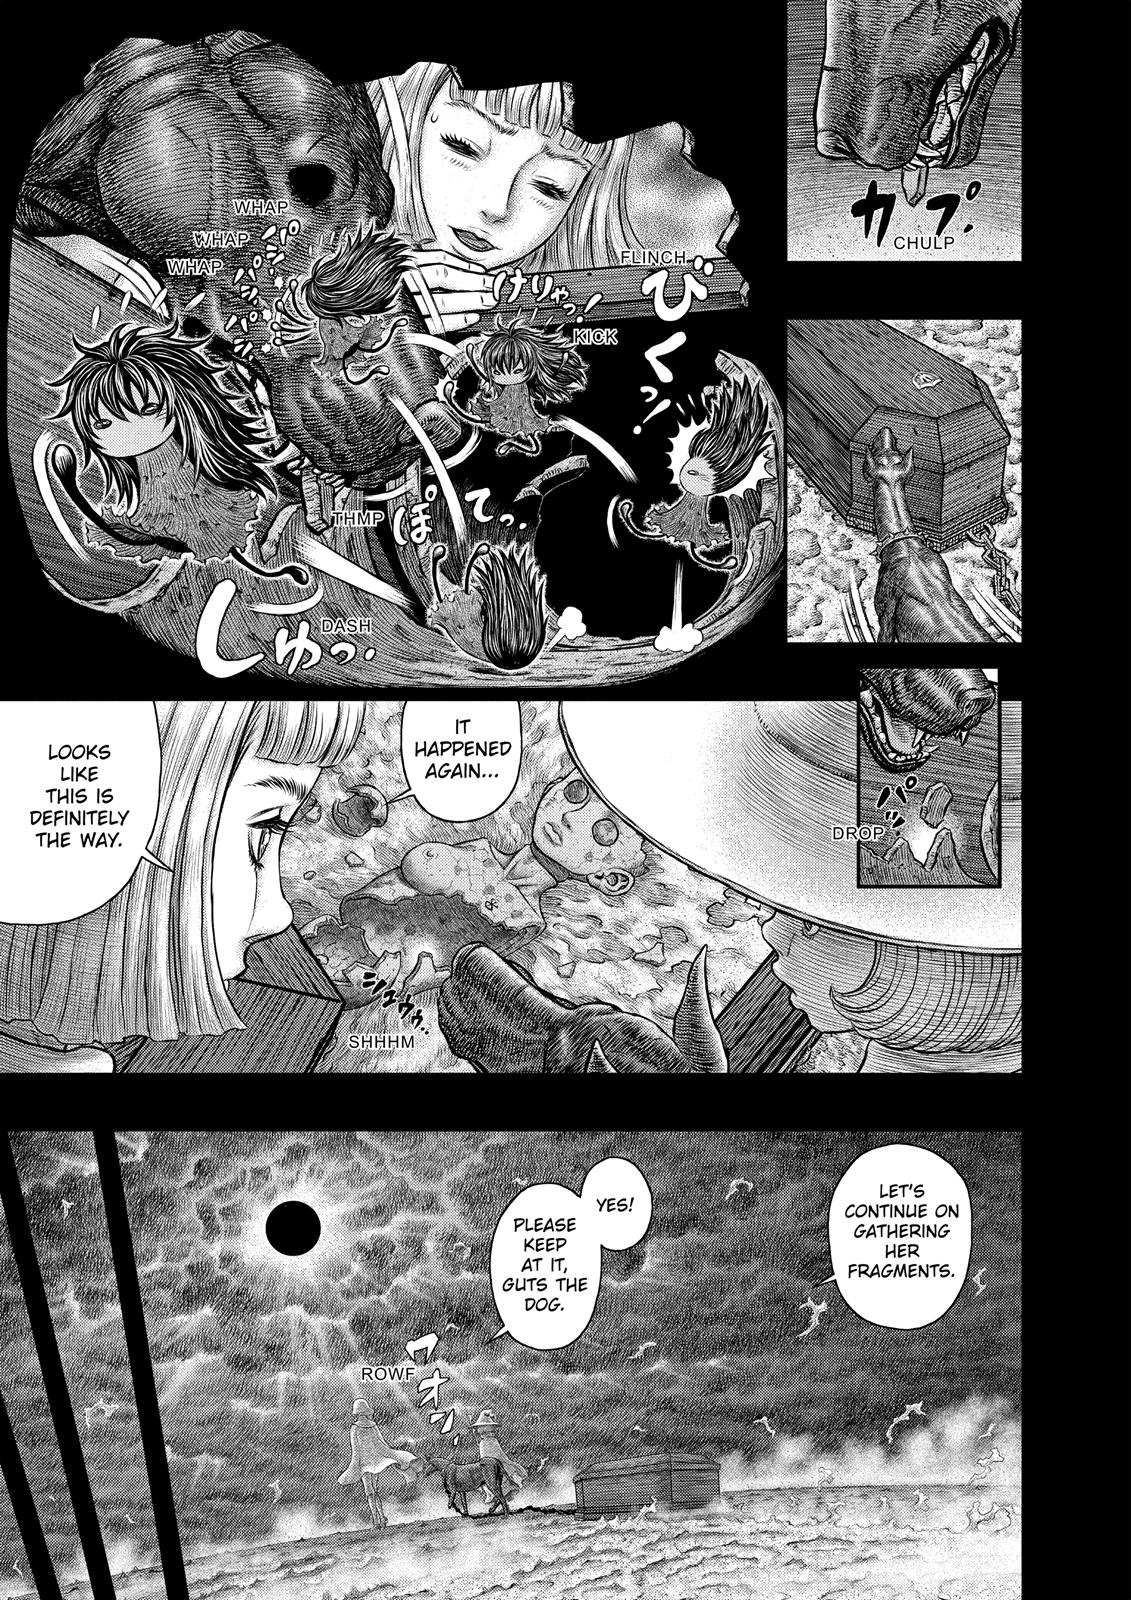 Berserk Manga Chapter 350 image 04